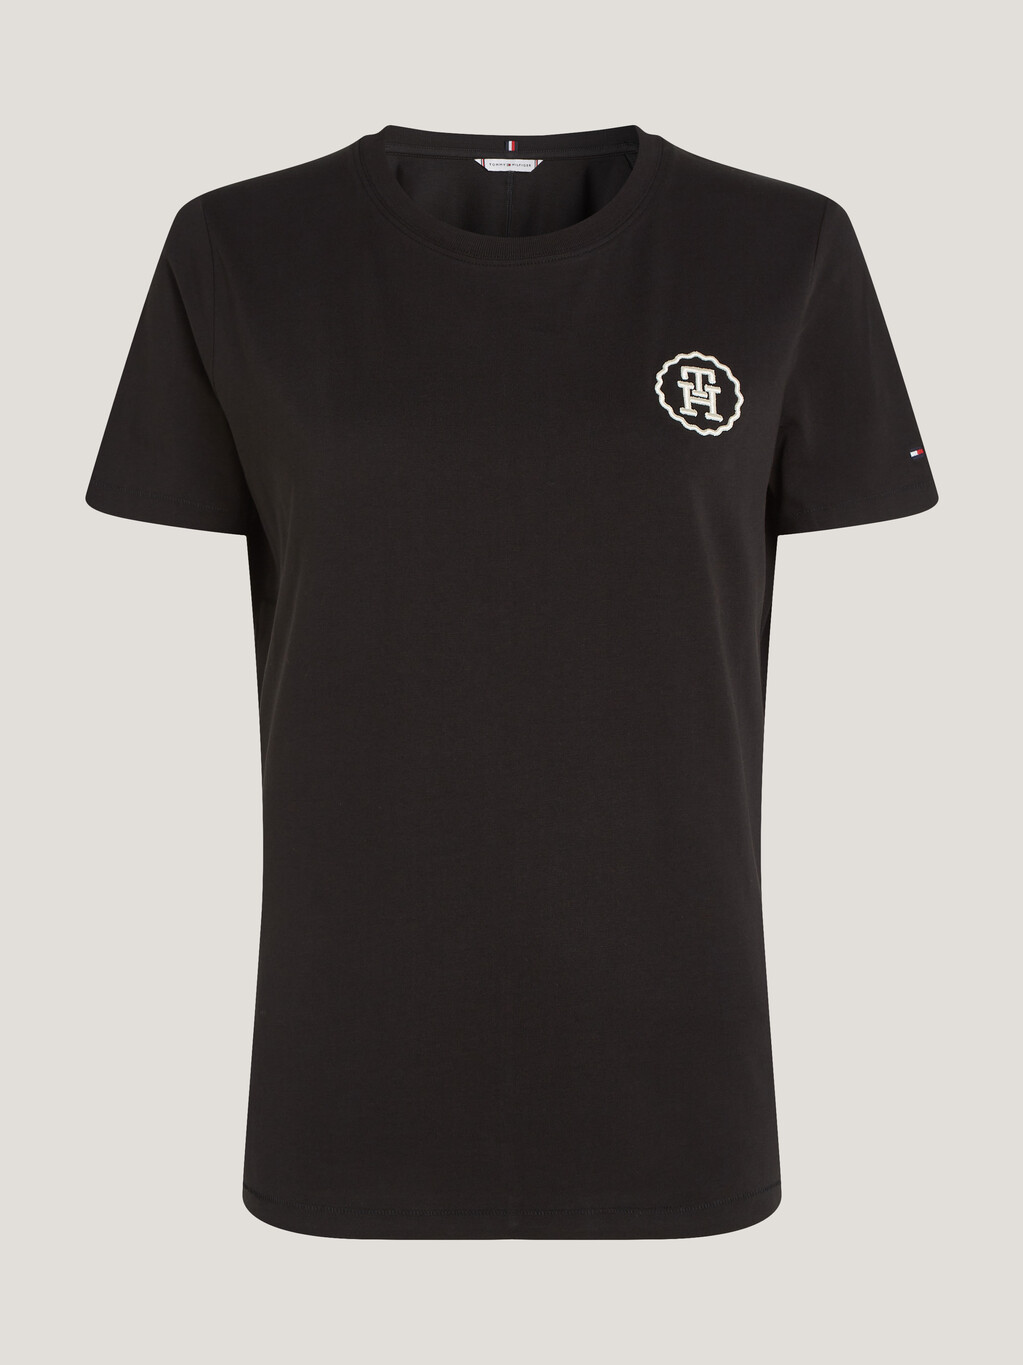 現代同色系Logo刺繡 T 恤, Black, hi-res